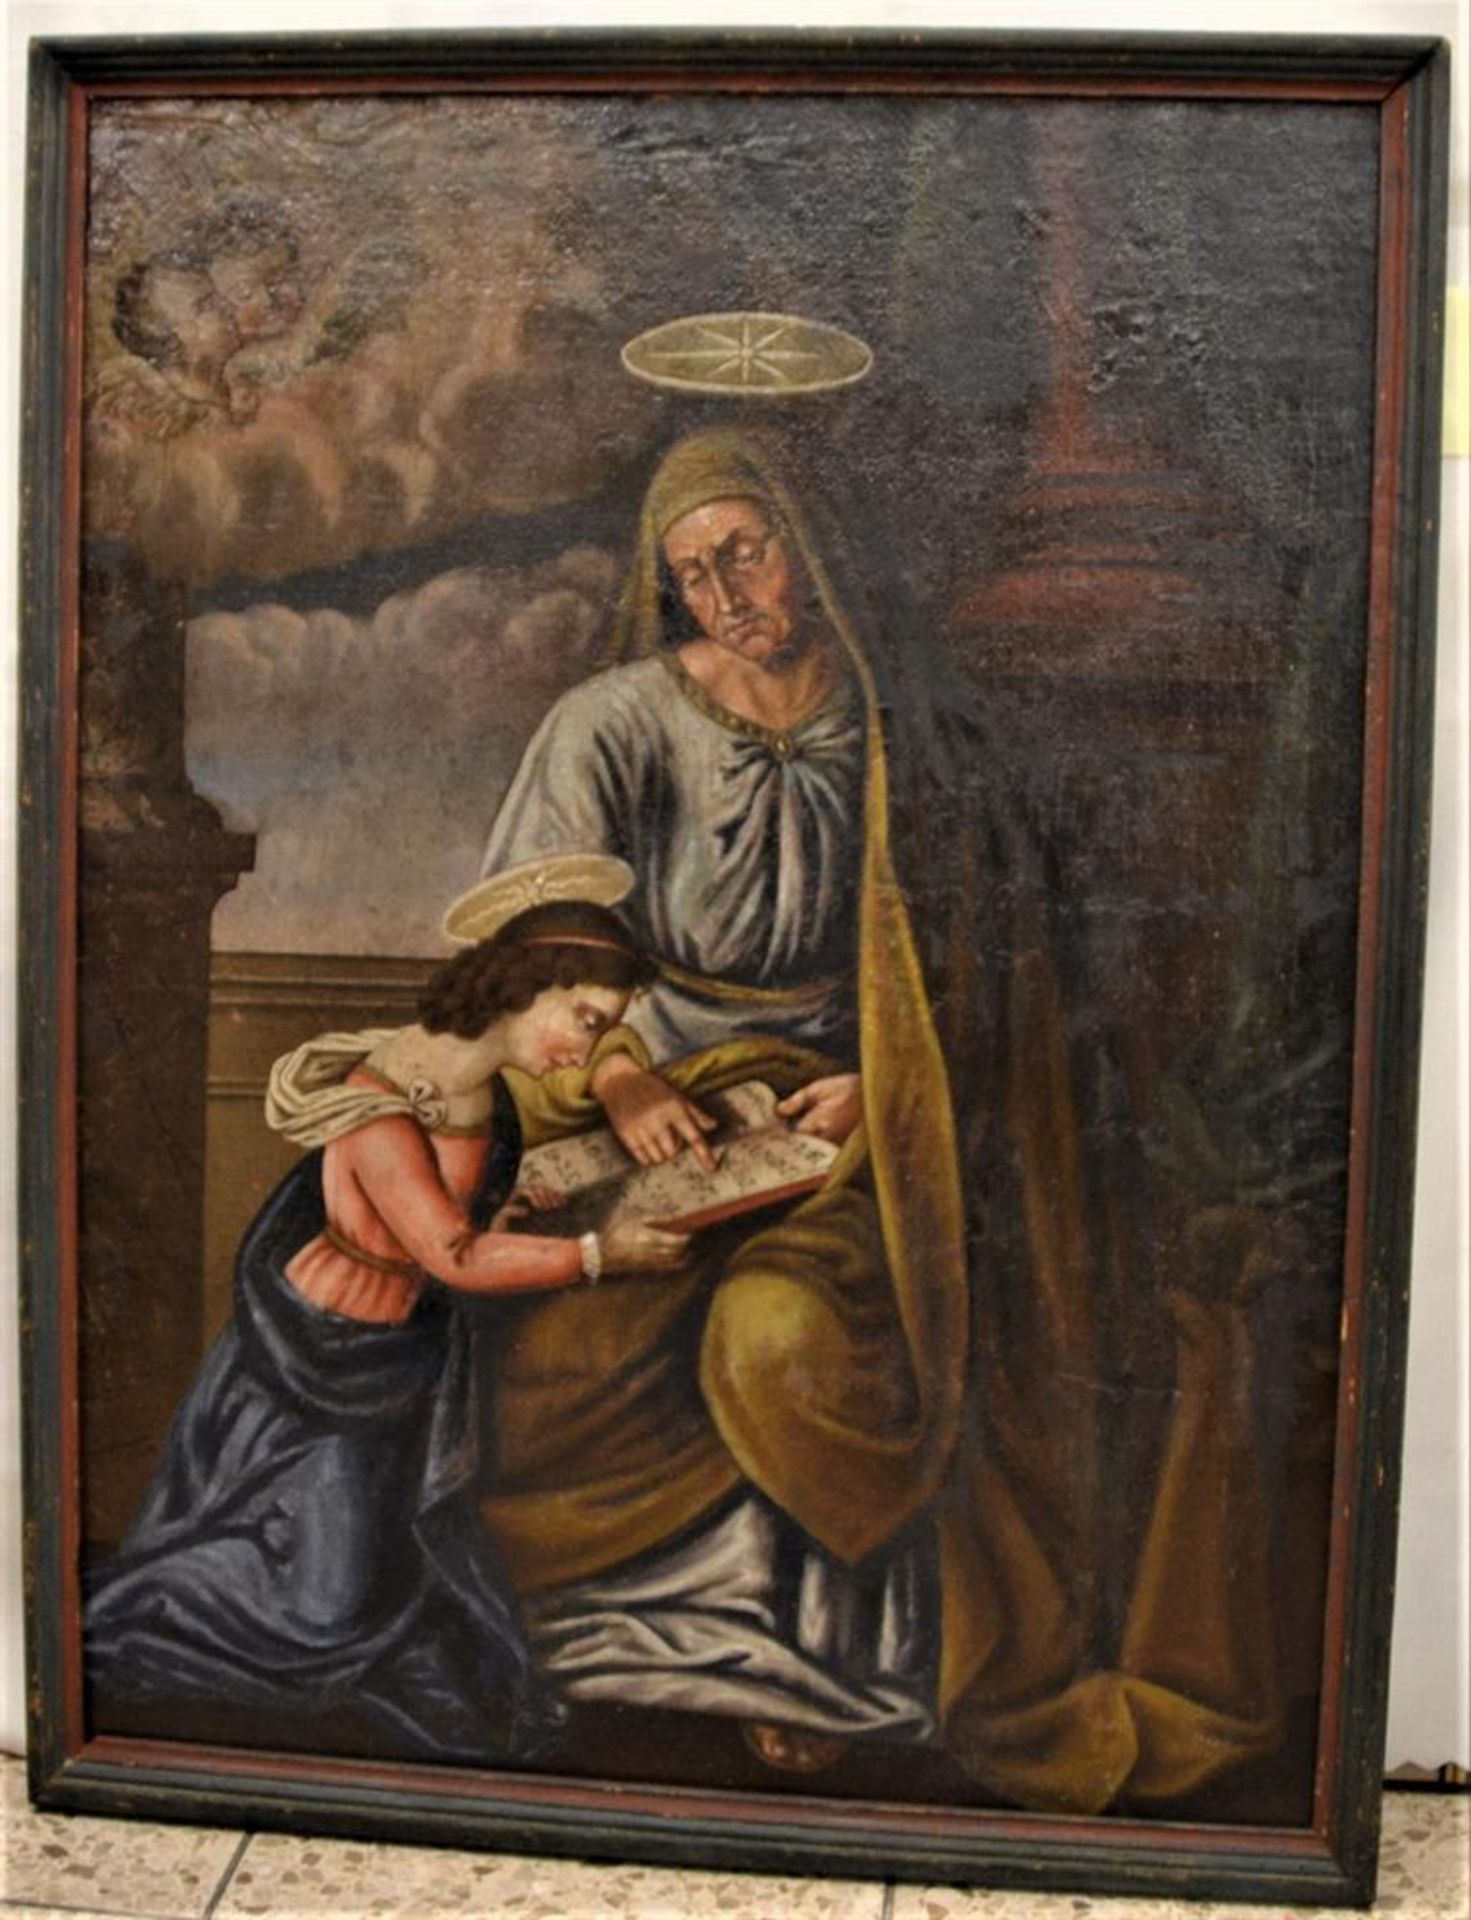 Gemälde Öl ,,Hl. Anna" 18.Jhdt. doubliert auf Spanplatte aufgezogen ca. 83x63cm (mit Rahmen),